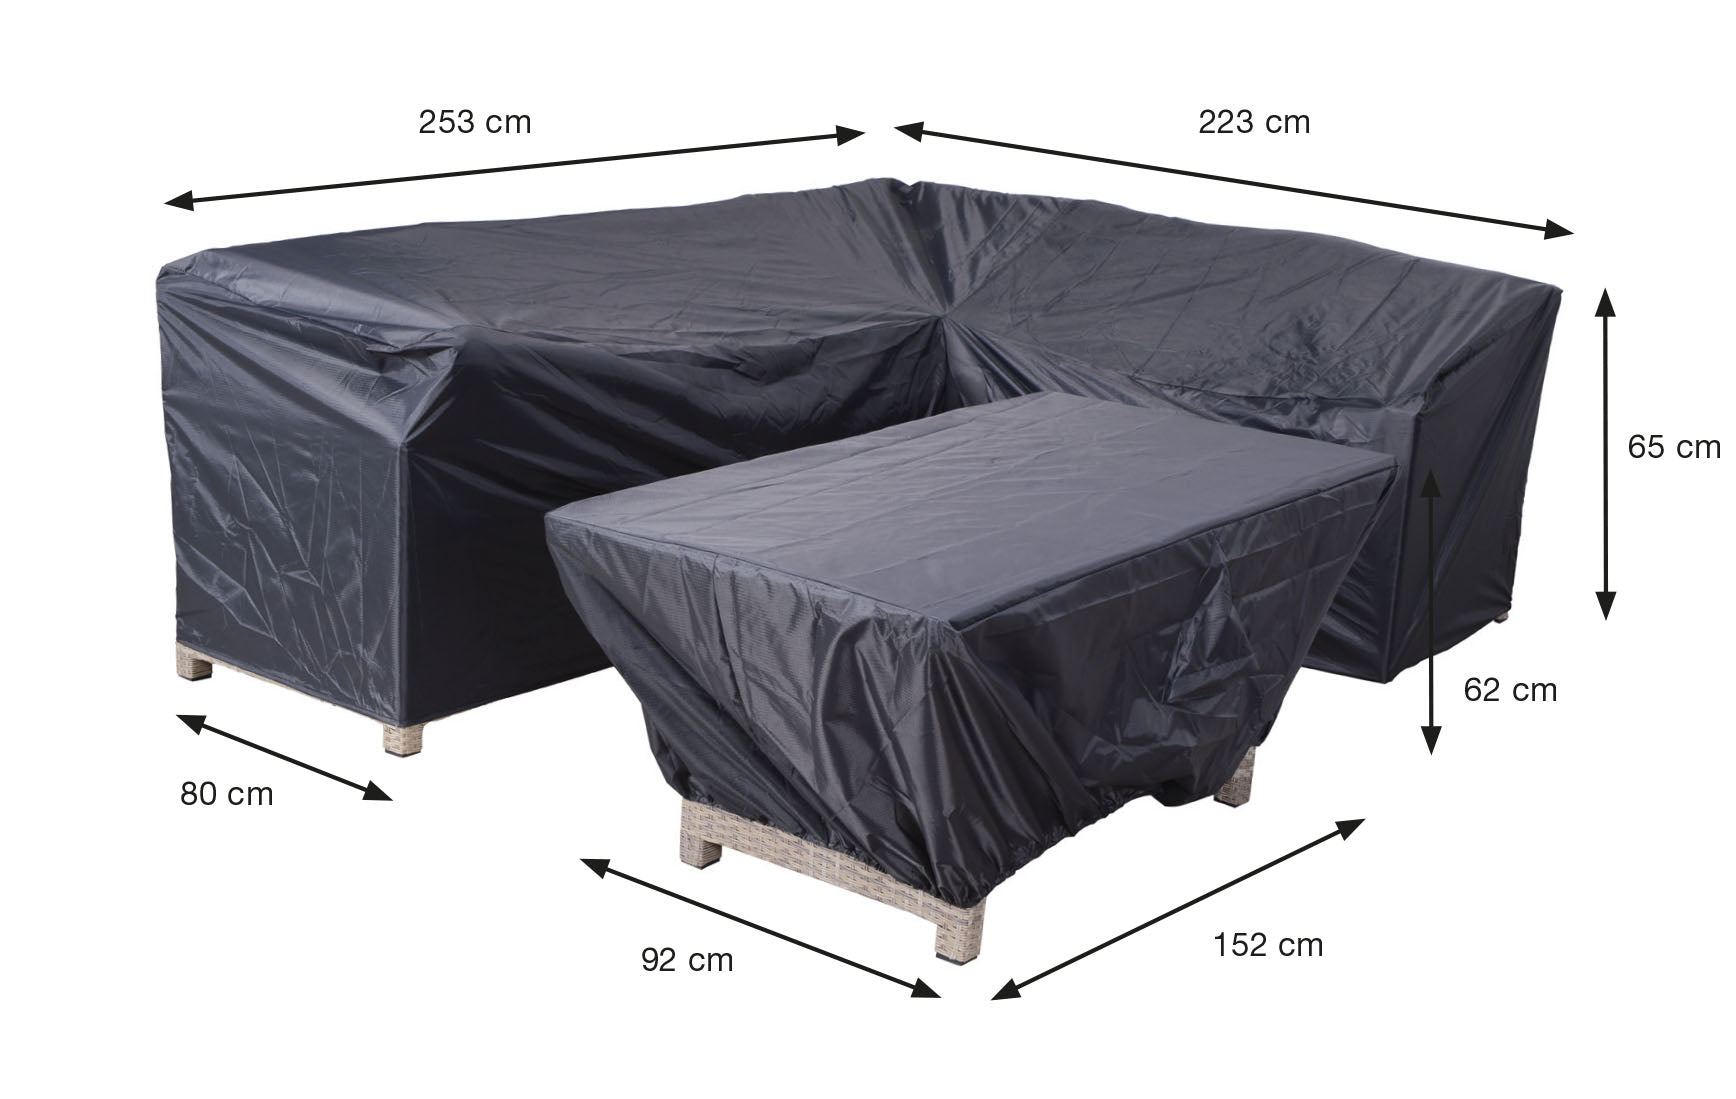 Coverit Lounge Set 253cm/223cm x 80cm x 65cm & 152cm x 92cm x 62cm